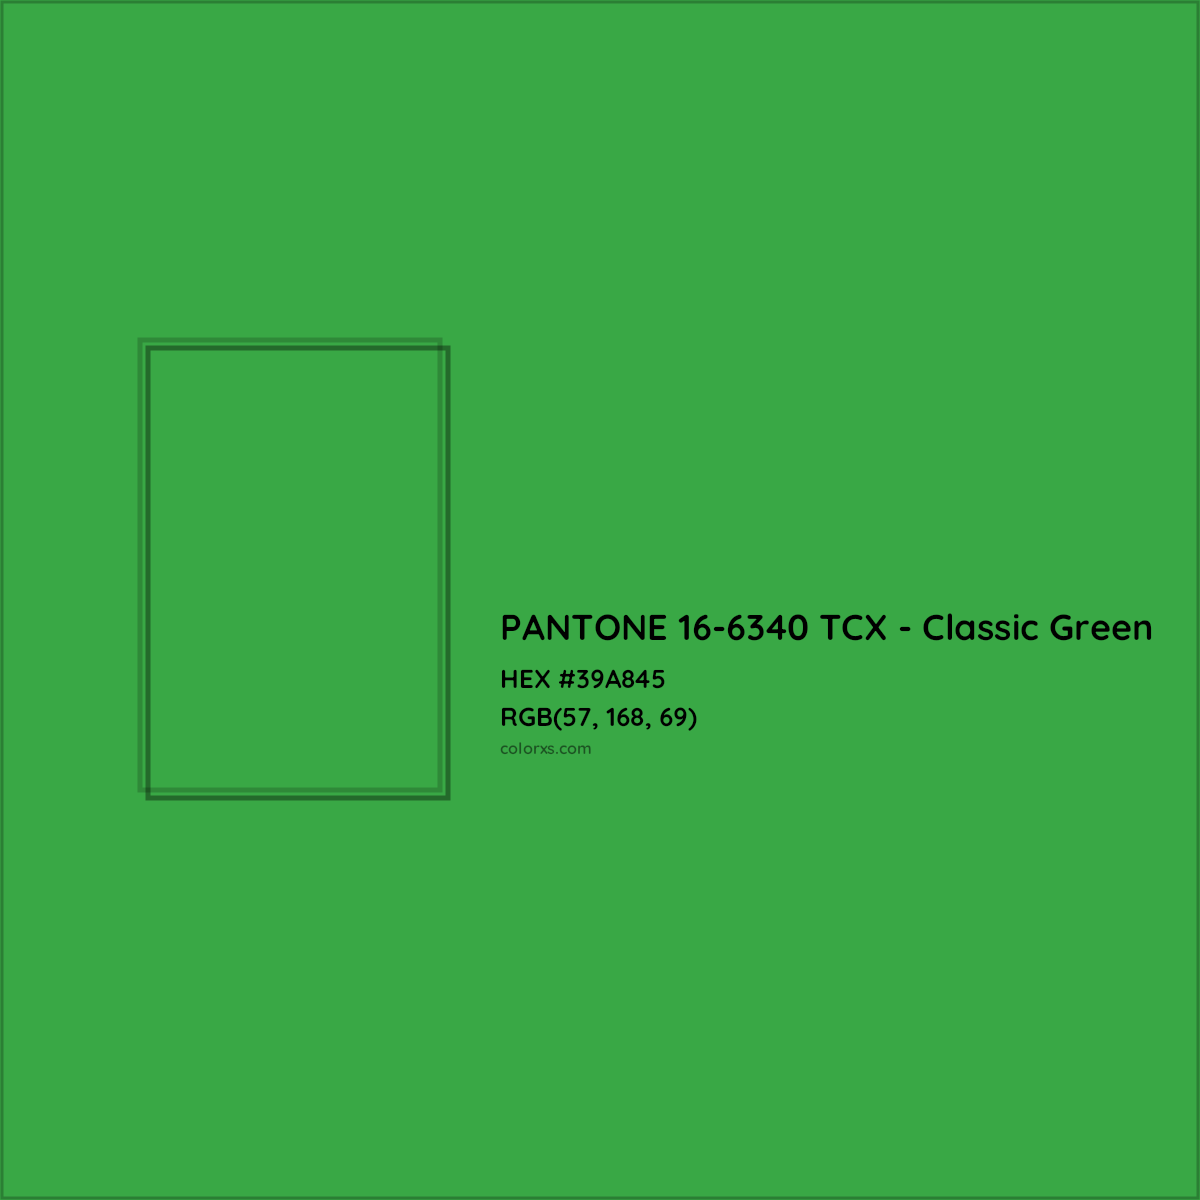 HEX #39A845 PANTONE 16-6340 TCX - Classic Green CMS Pantone TCX - Color Code